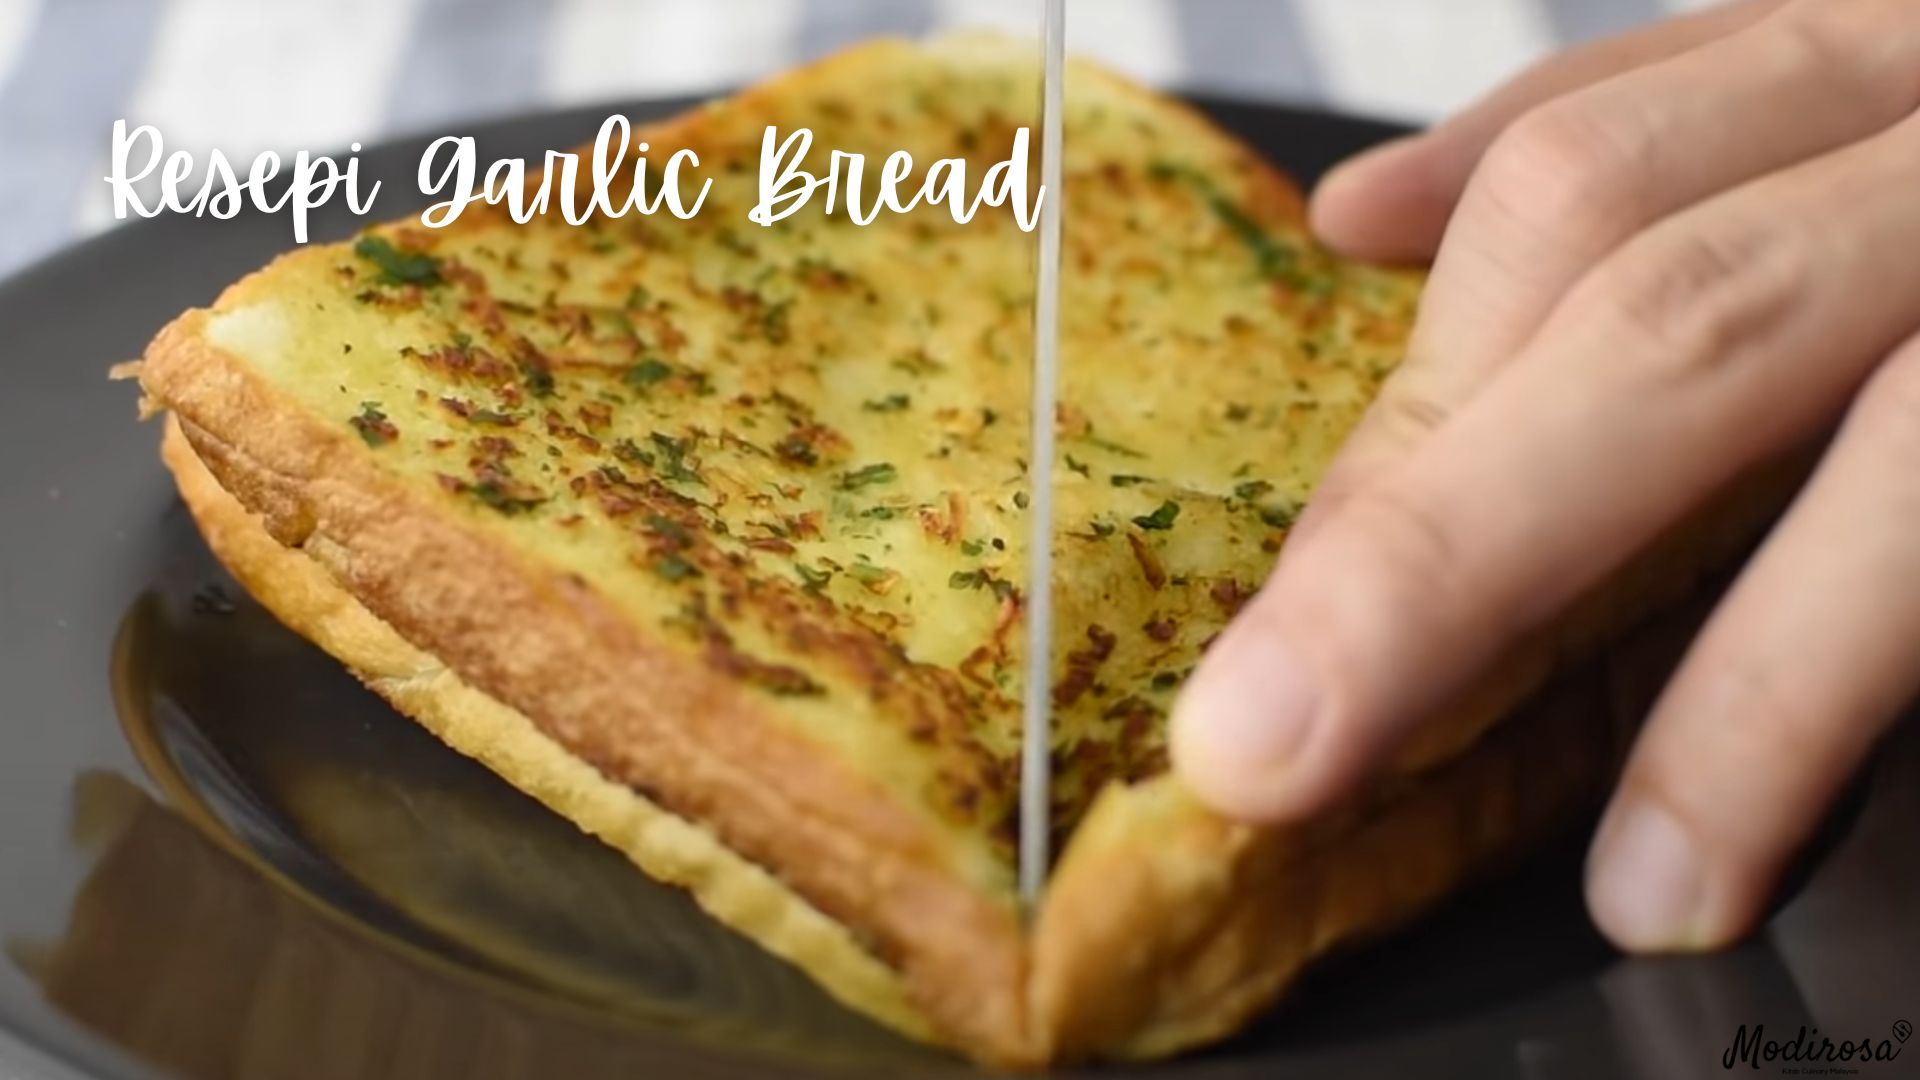 Resepi Garlic Bread 1